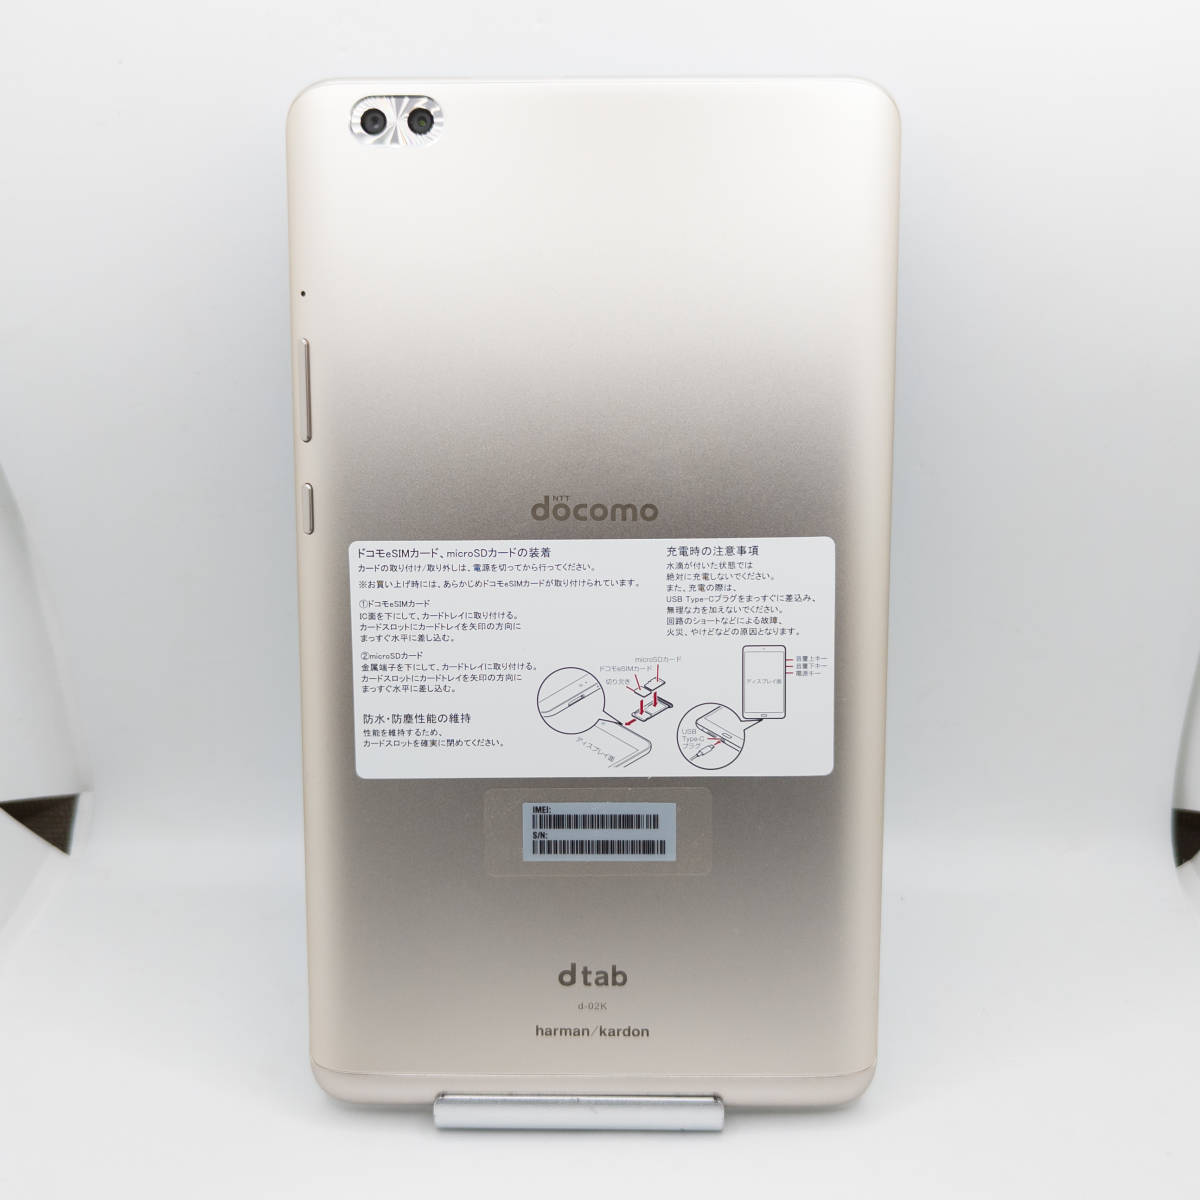 [ST-02577] Huawei dtab Compact d-02K ゴールド タブレット ファーウェイ Android アンドロイド タブ docomo 本体_画像1